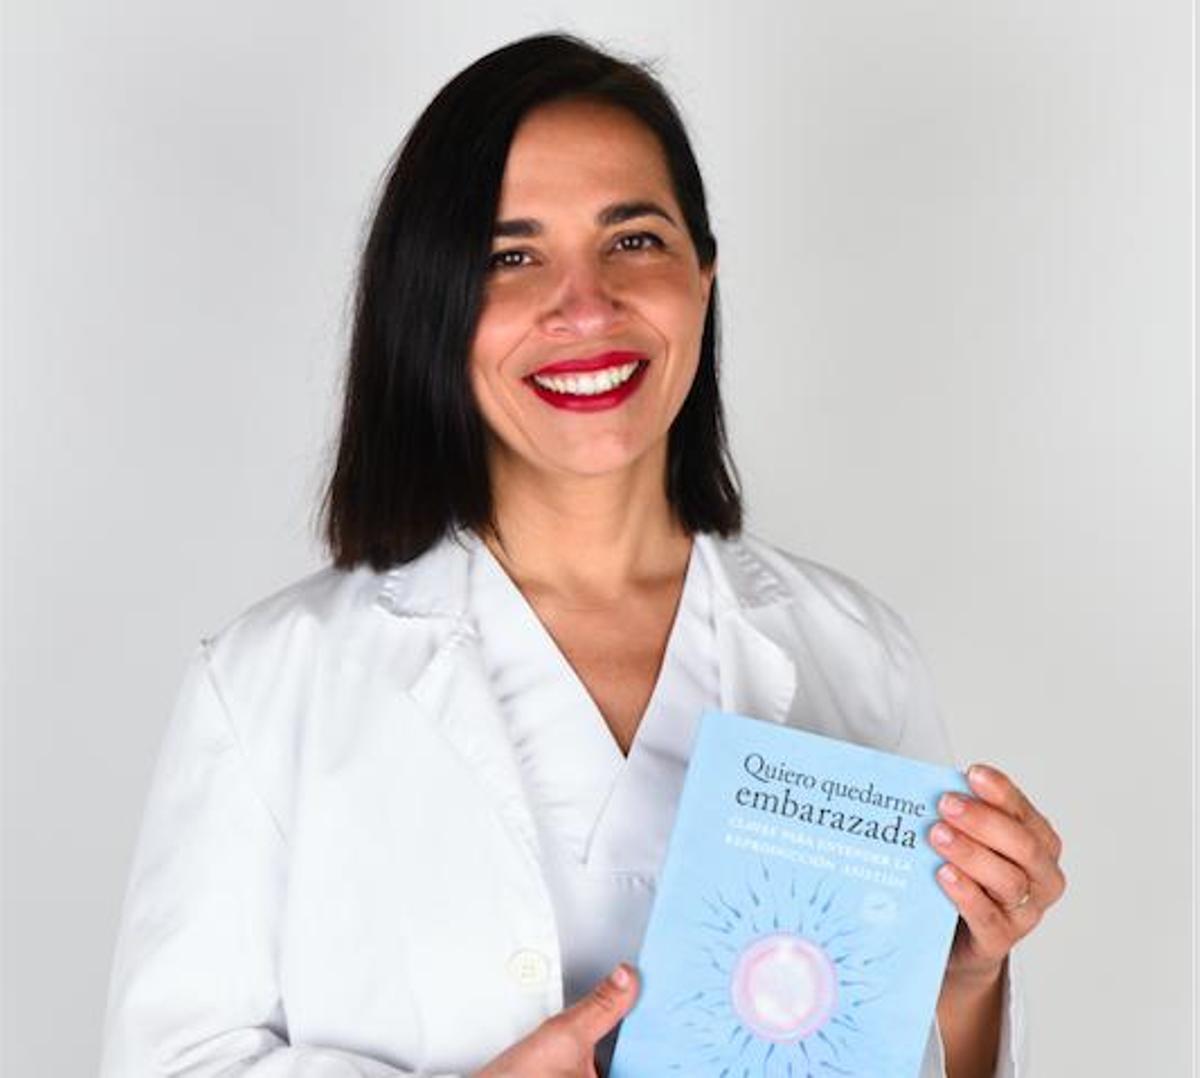 La doctora Sara López, autora de 'Quiero quedarme embarazada. Claves para entender la reproducción asistida'.